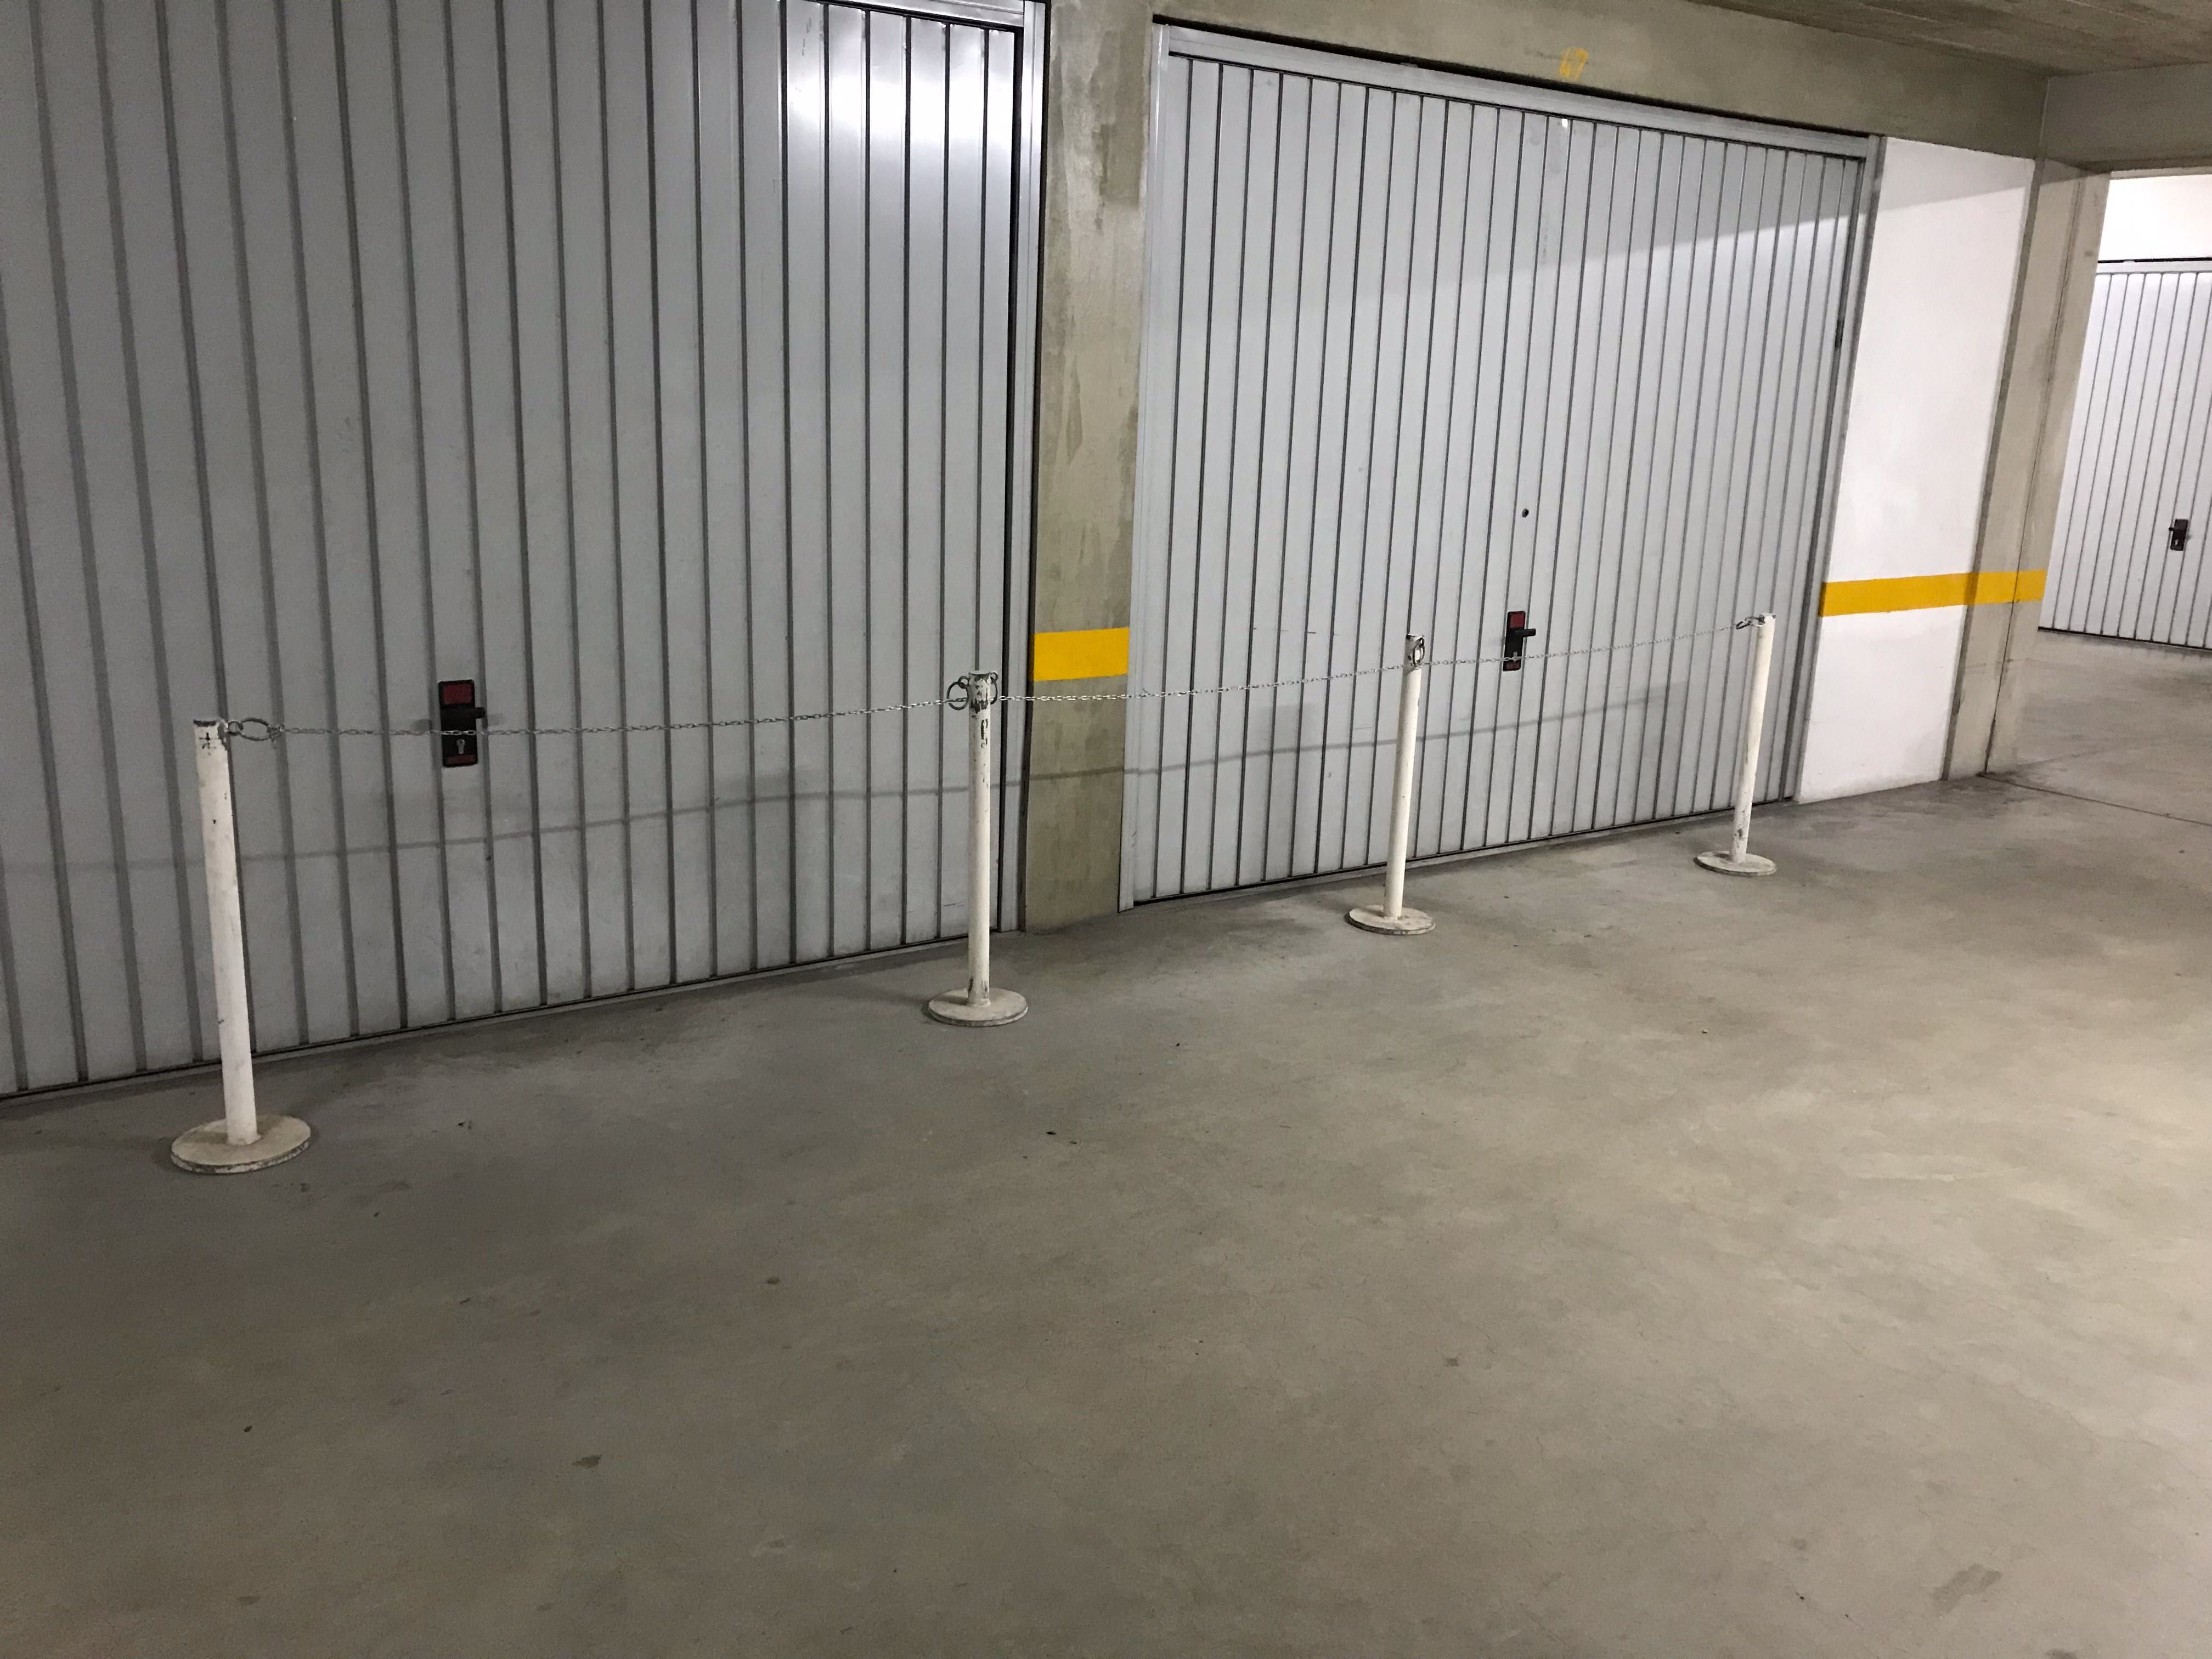 Postes barreira limitadores com corrente mecos espaço loja ou garagem